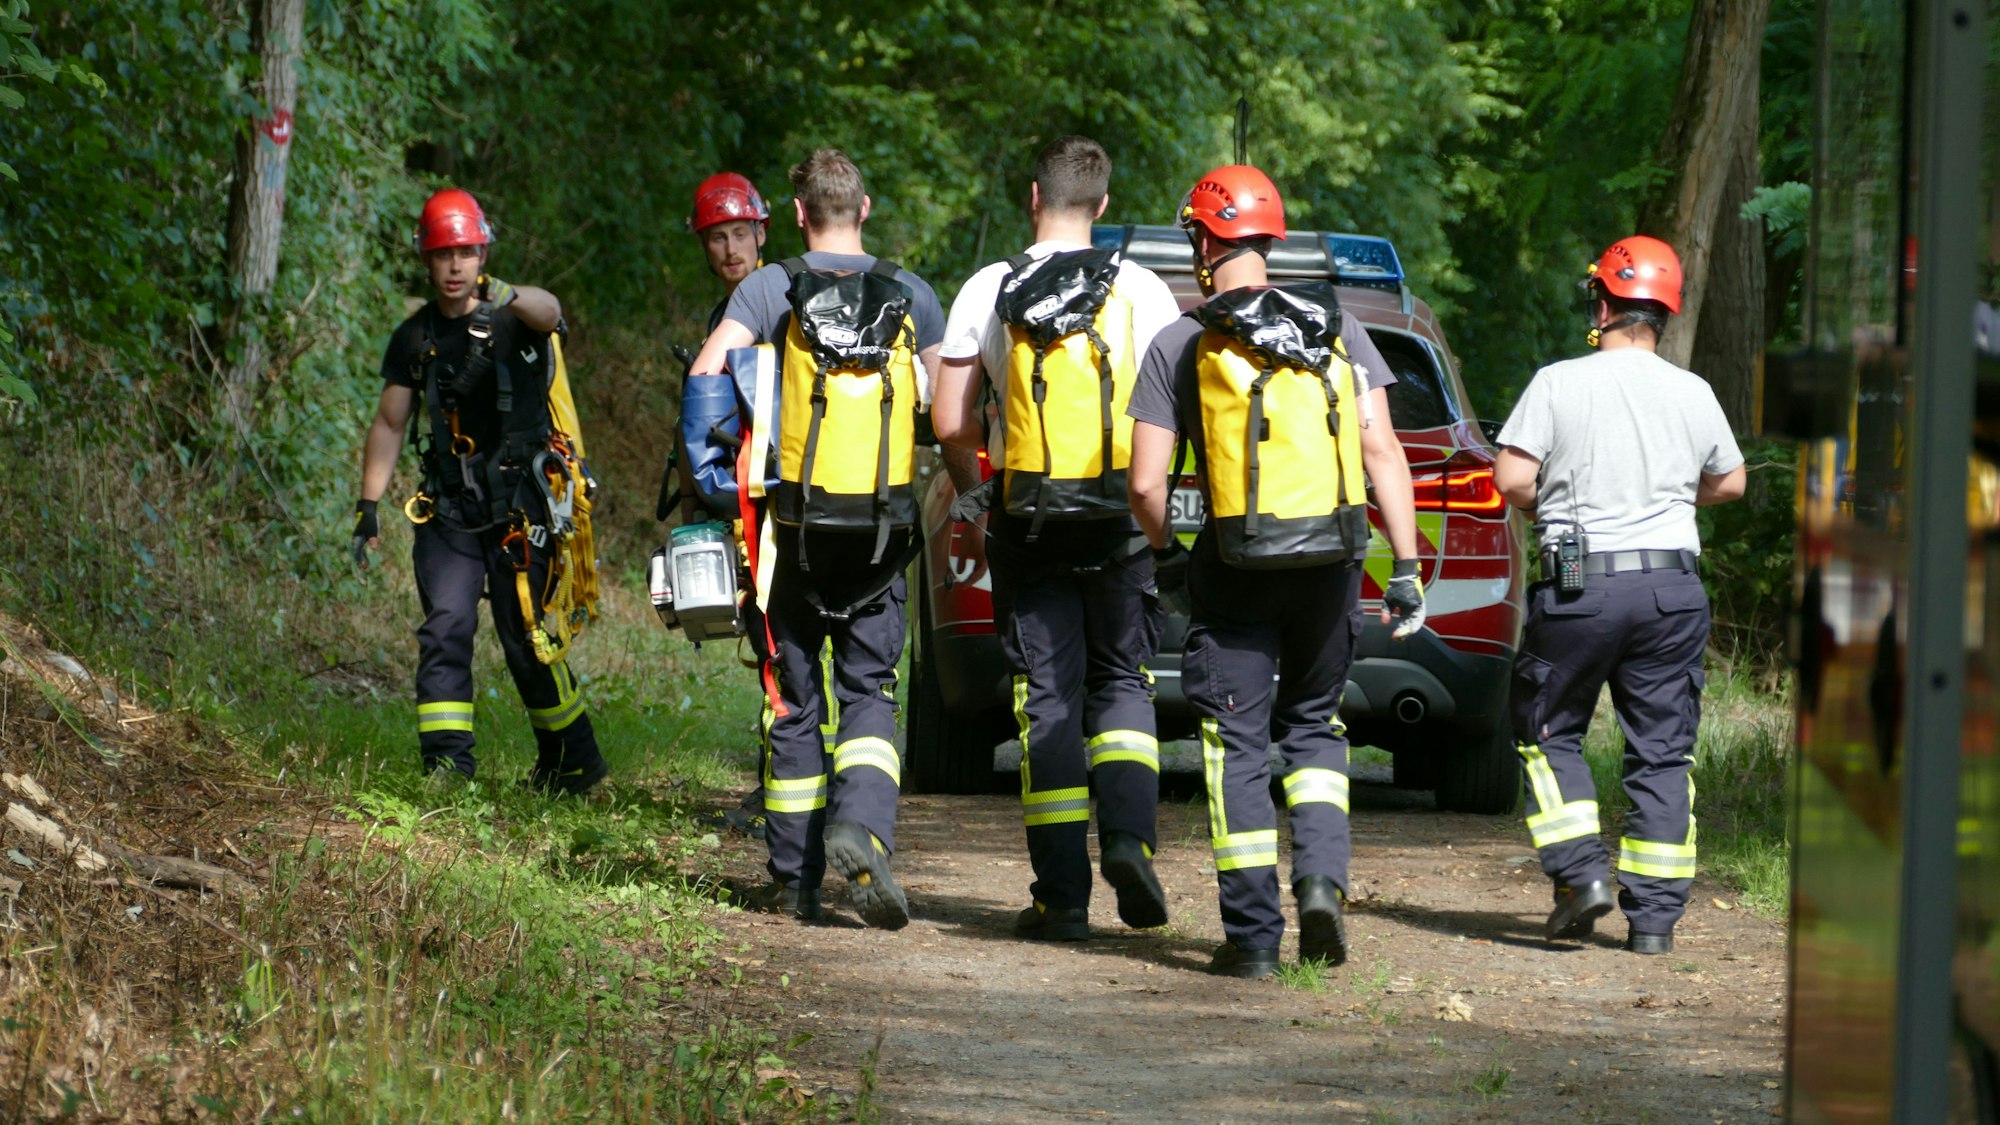 Feuerwehrleute retteten die beiden Verunglückten aus dem Hang in Hennef.